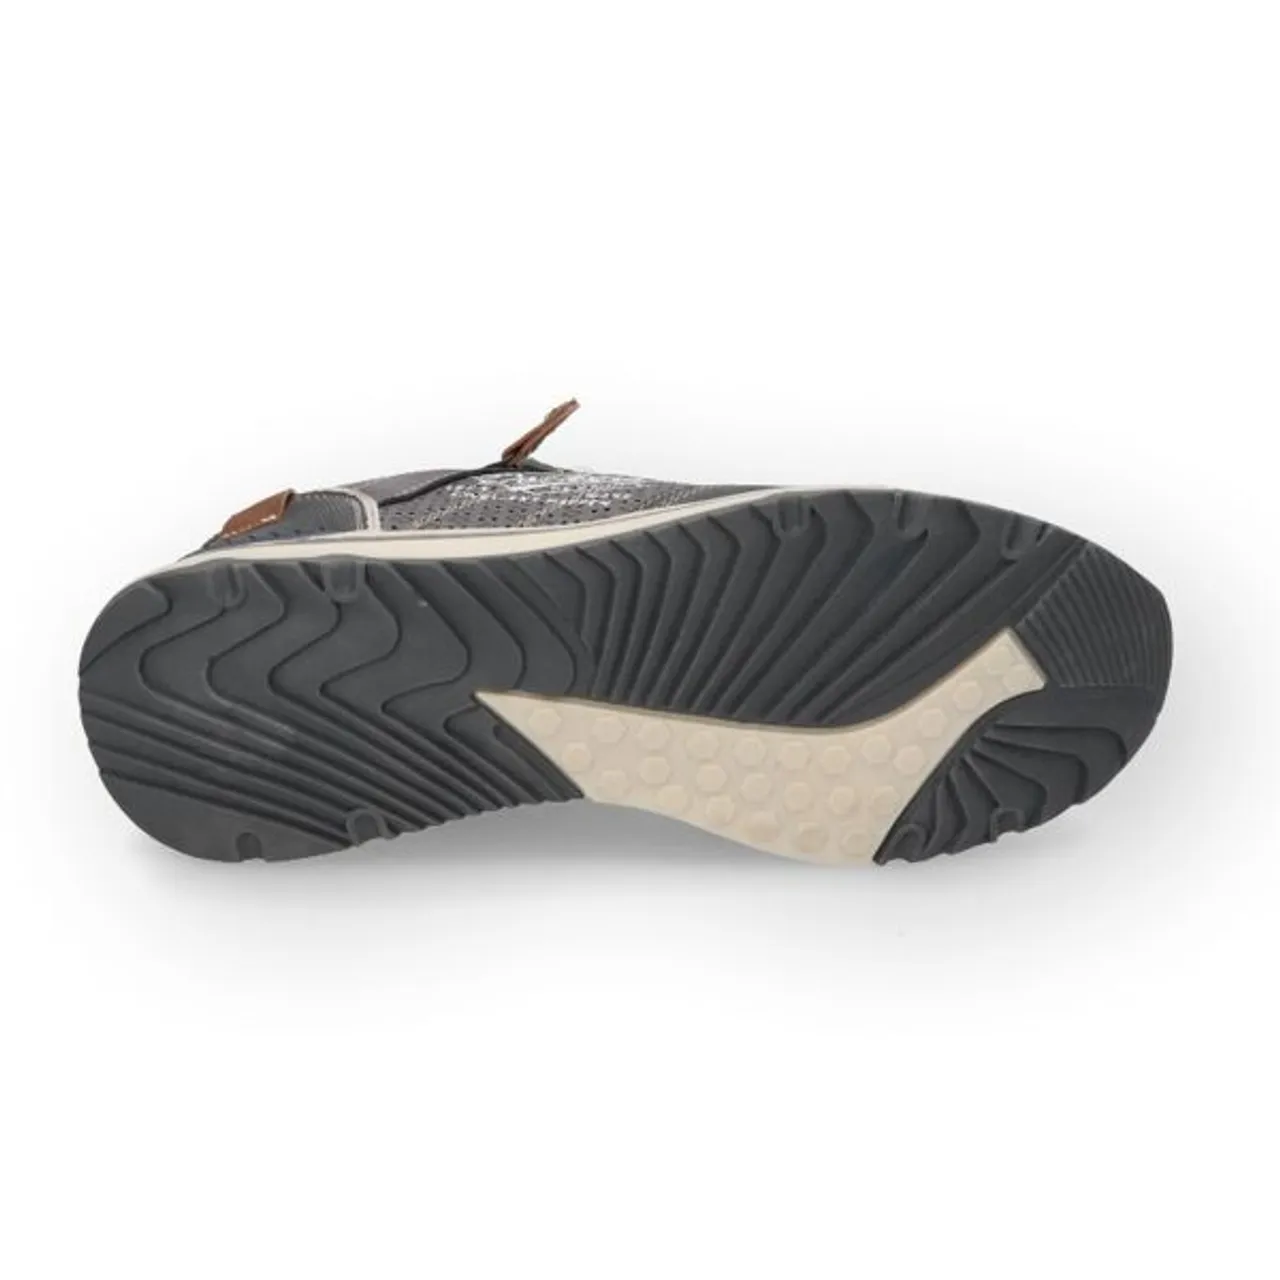 Sneaker DOCKERS BY GERLI Gr. 40, grau (dunkelgrau) Herren Schuhe Stoffschuhe Freizeitschuh, Halbschuh, Schnürschuh mit Zierreißverschluss